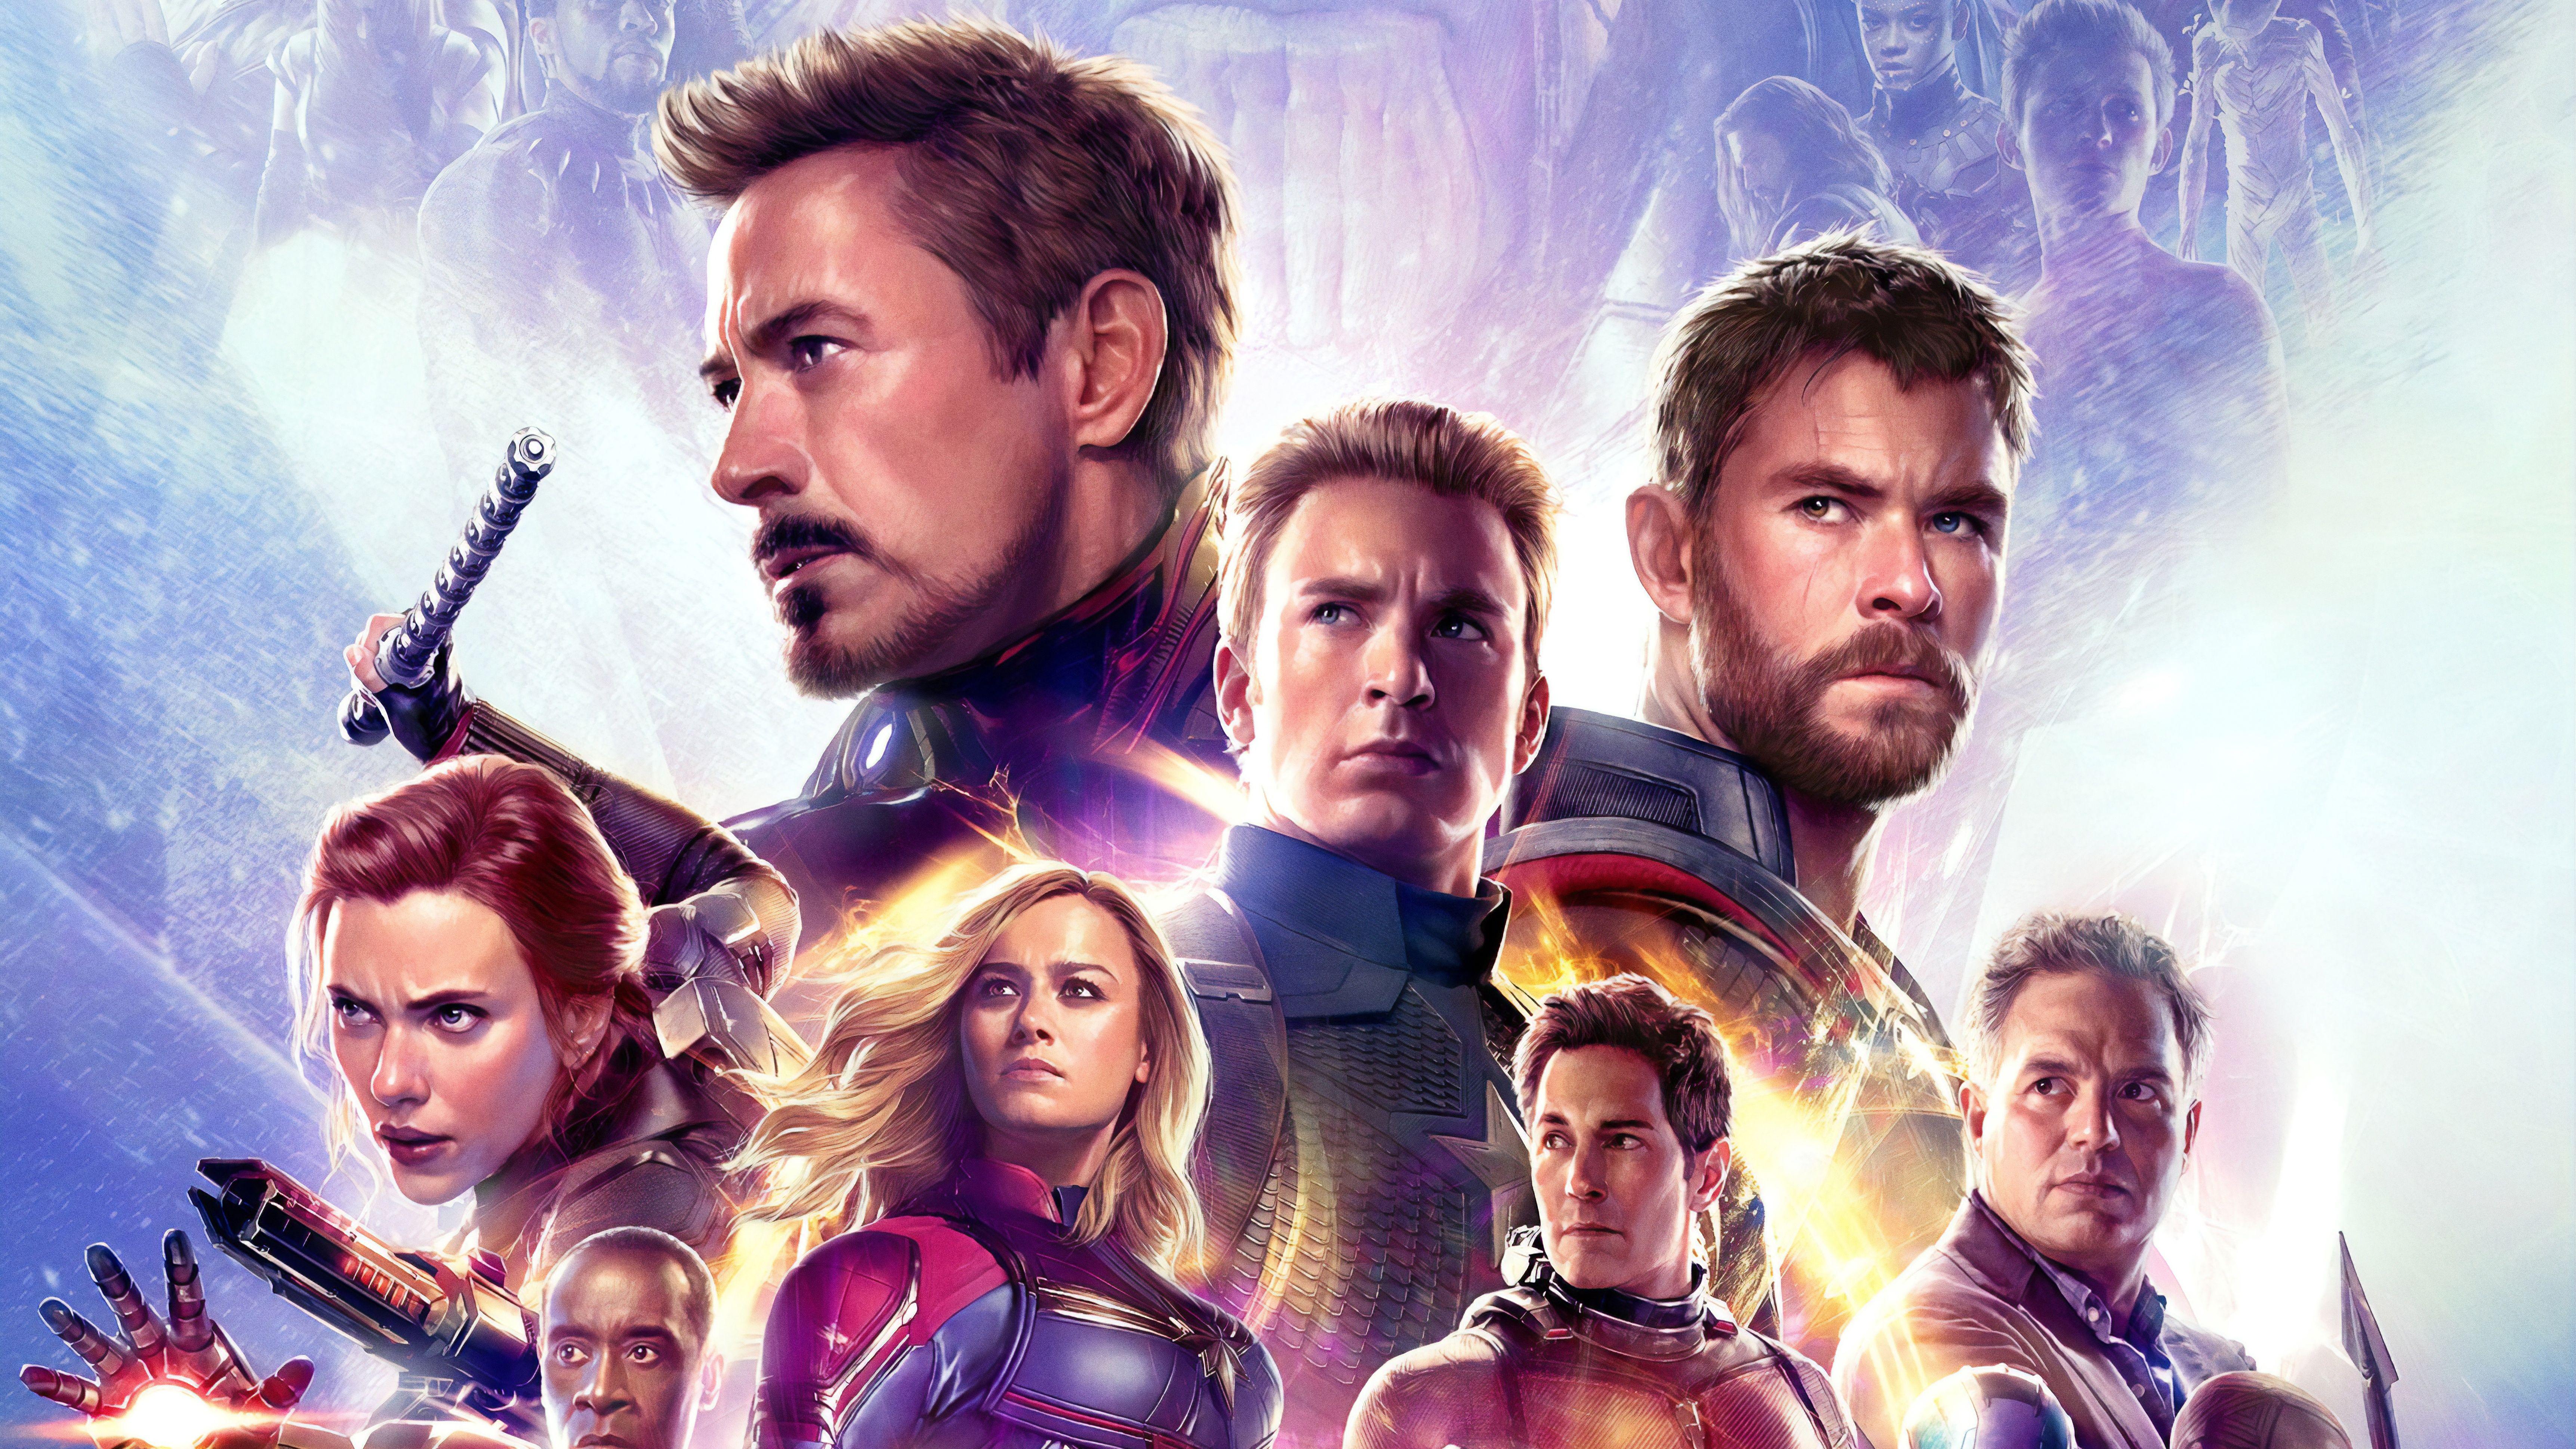 Hình nền giới thiệu về các siêu anh hùng trong Avengers thật sự là một điểm nhấn cực kỳ ấn tượng cho các fan của bộ phim này. Cho dù bạn là fan cuồng hay mới chỉ đơn giản là người yêu thích, hãy cùng xem qua những mẫu hình nền độc nhất vô nhị này.